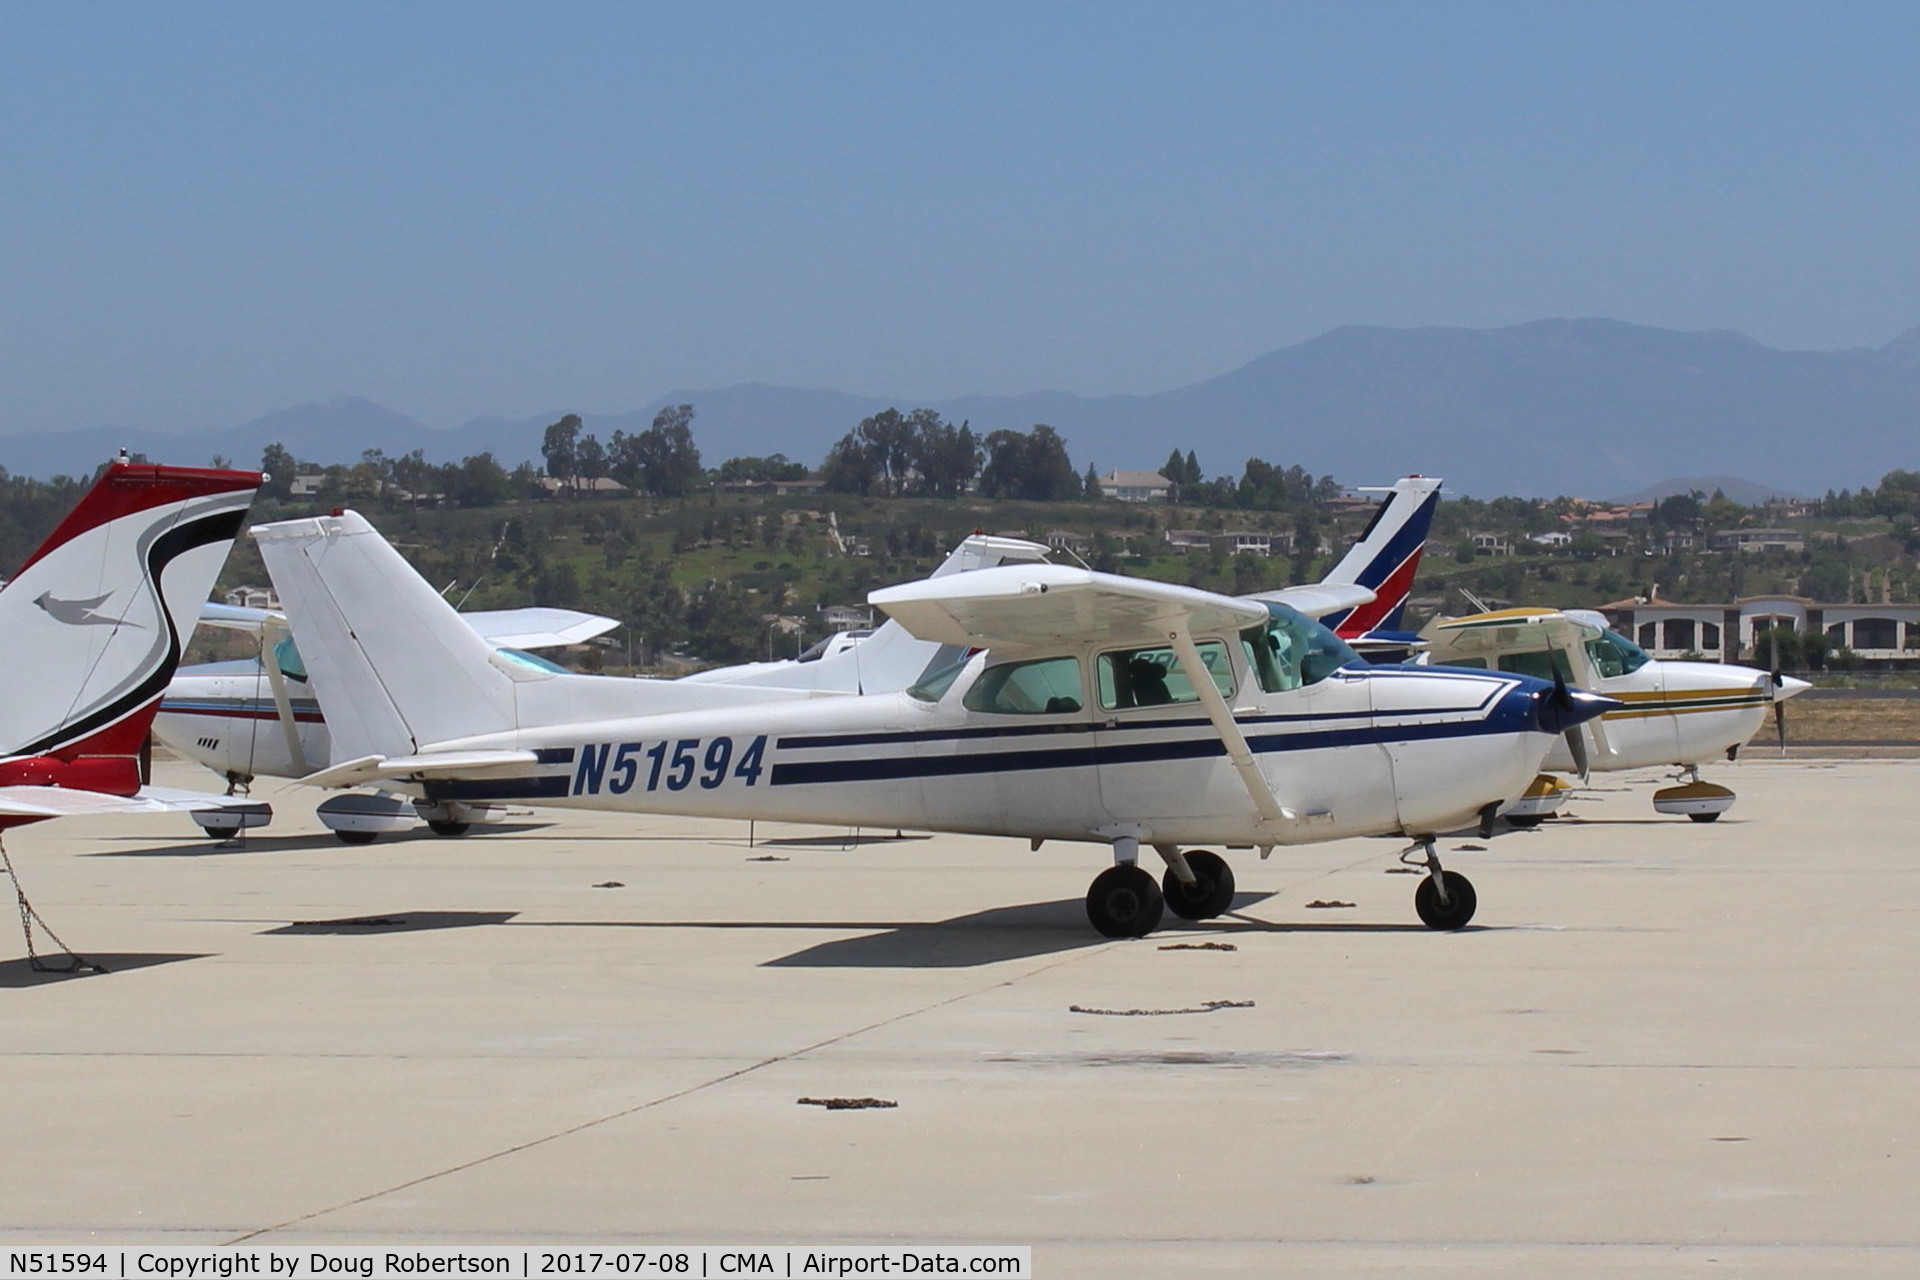 N51594, 1980 Cessna 172P C/N 17274326, 1980 Cessna 172P SKYHAWK, Lycoming IO-320-H2AD 160 Hp